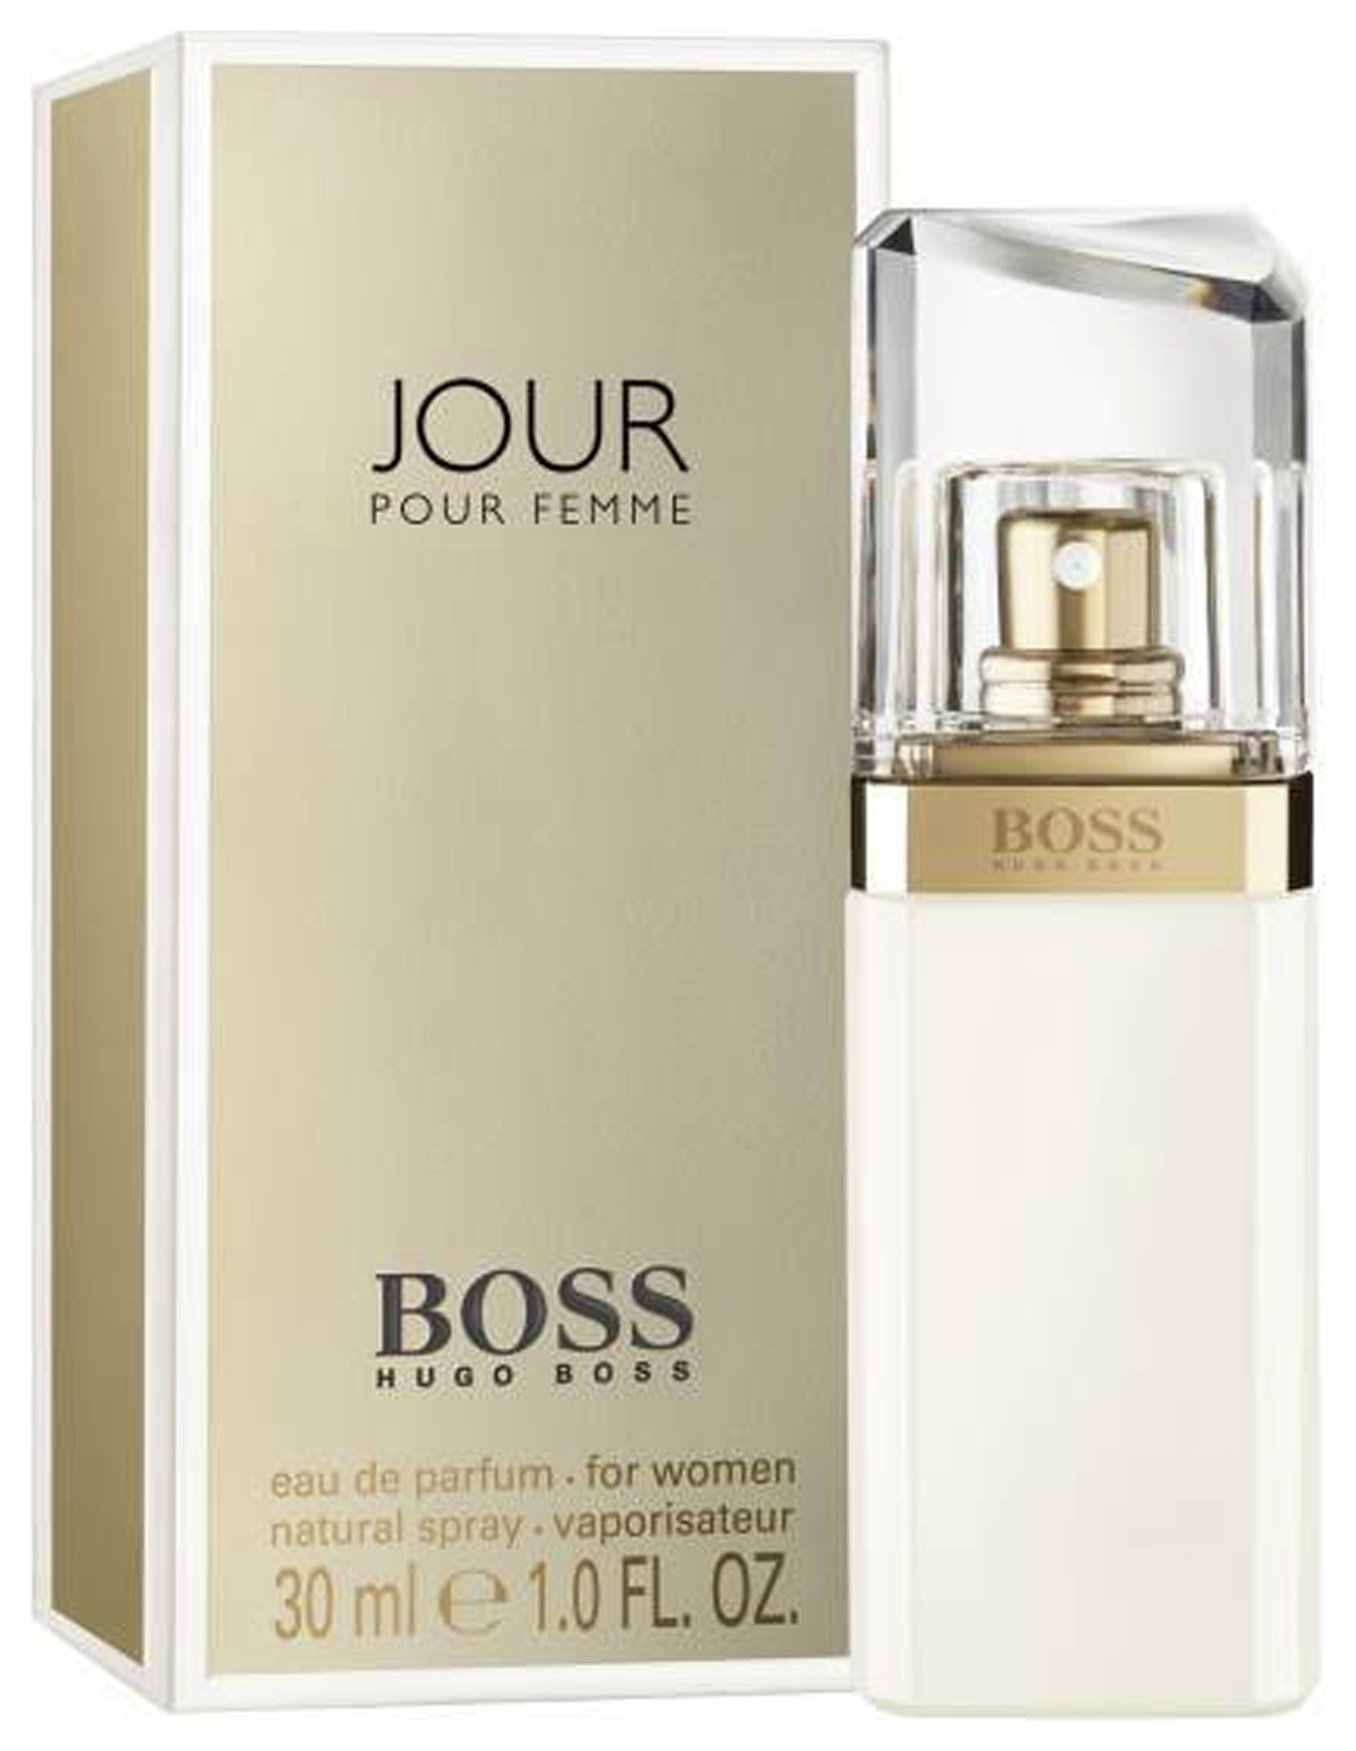 Hugo Boss Jour for Women Eau de Parfum - 30ml